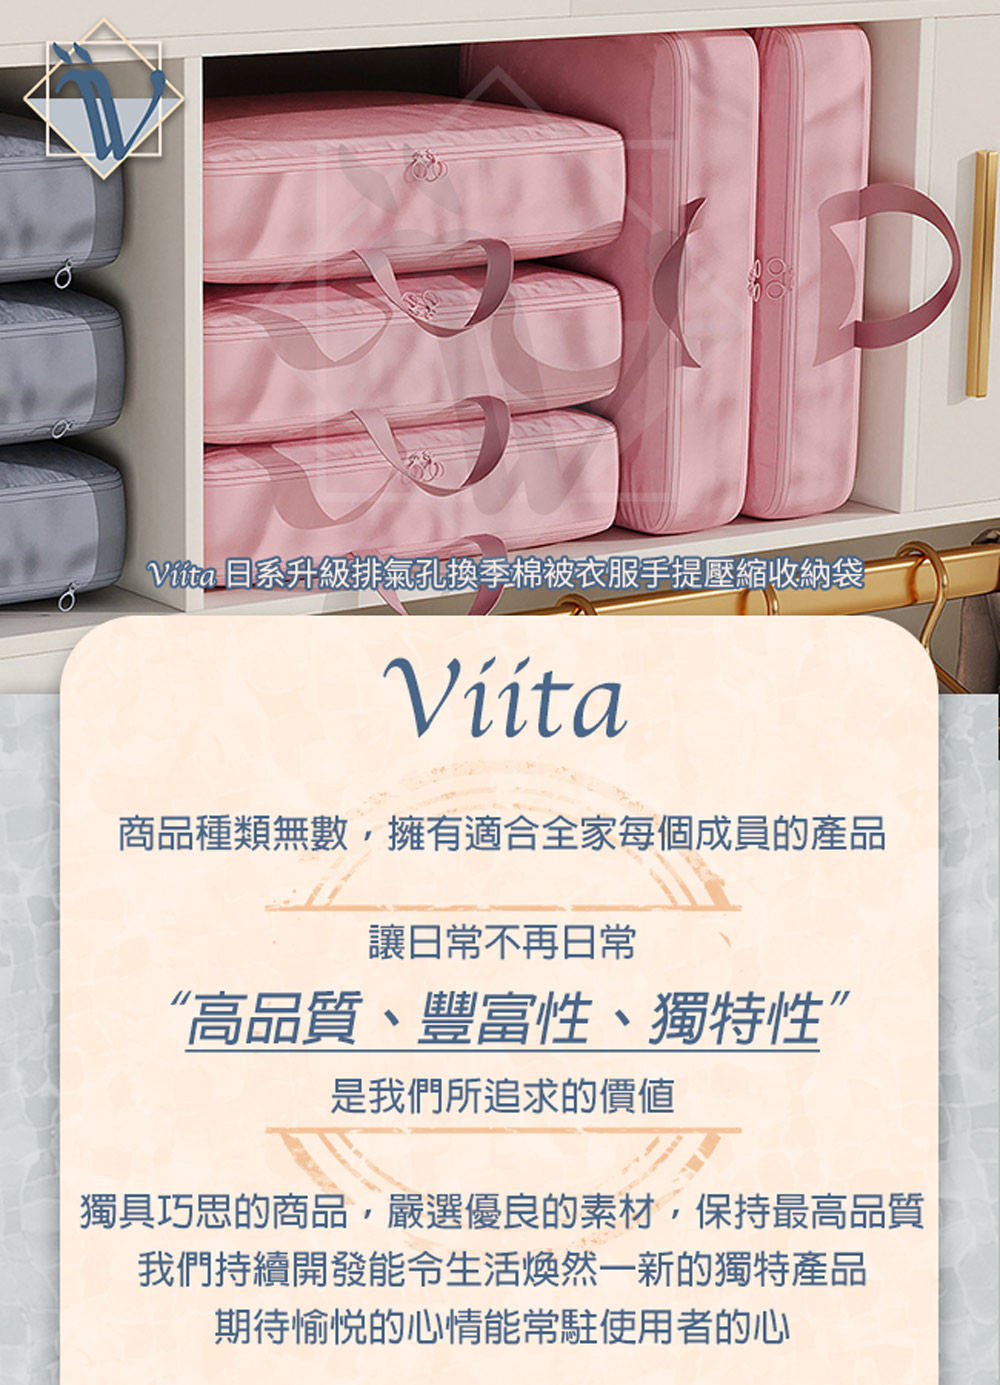 Viita 日式升級排氣孔換季棉被衣服手提壓縮收納袋 大號/